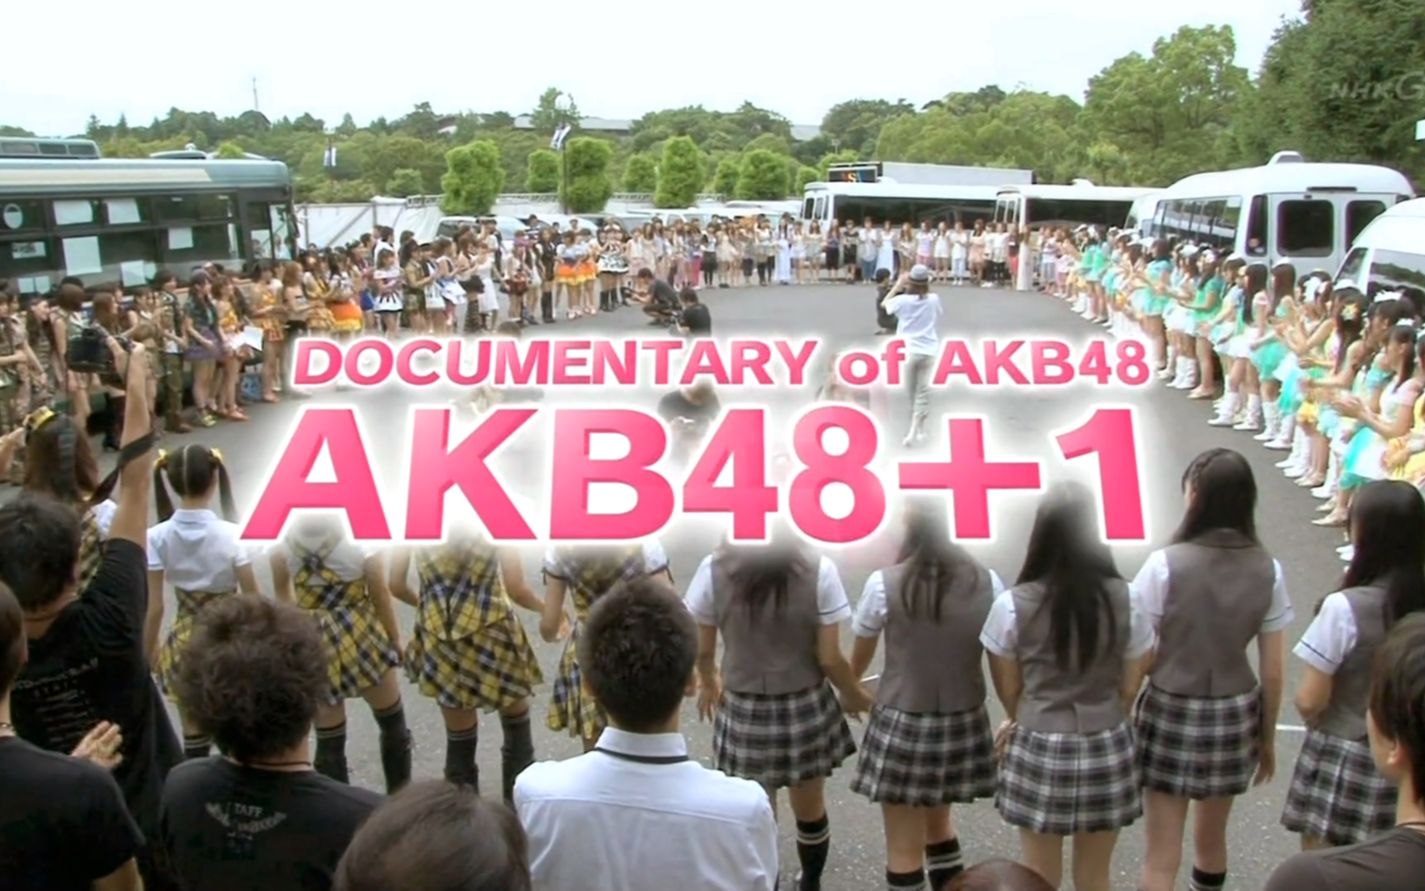 [图]120123 DOCUMENTARY of AKB48「AKB48＋1」